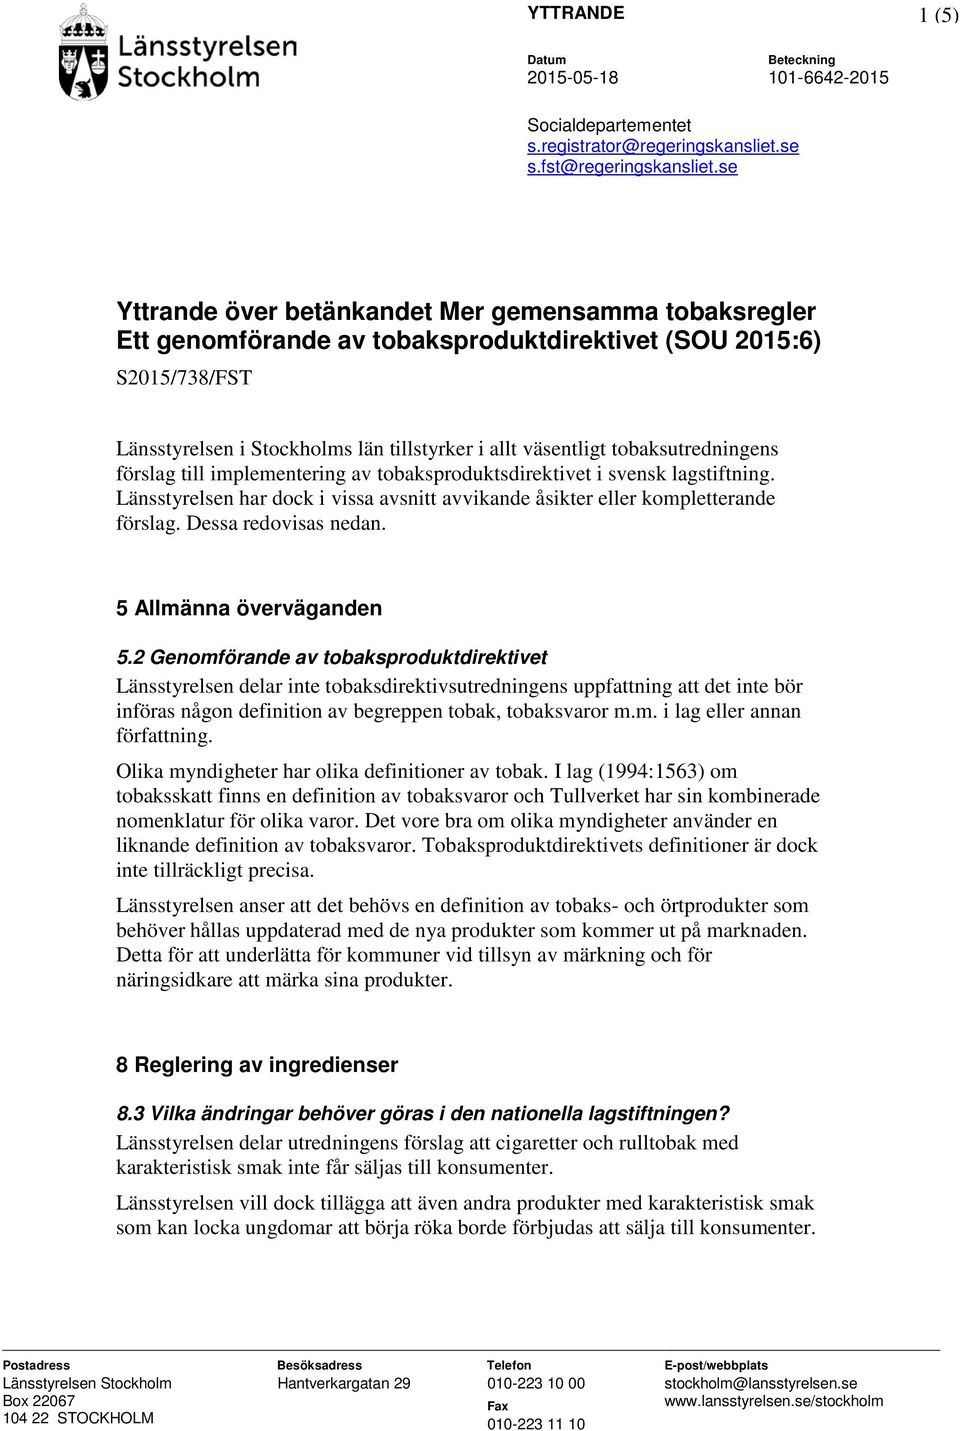 tobaksutredningens förslag till implementering av tobaksproduktsdirektivet i svensk lagstiftning. Länsstyrelsen har dock i vissa avsnitt avvikande åsikter eller kompletterande förslag.